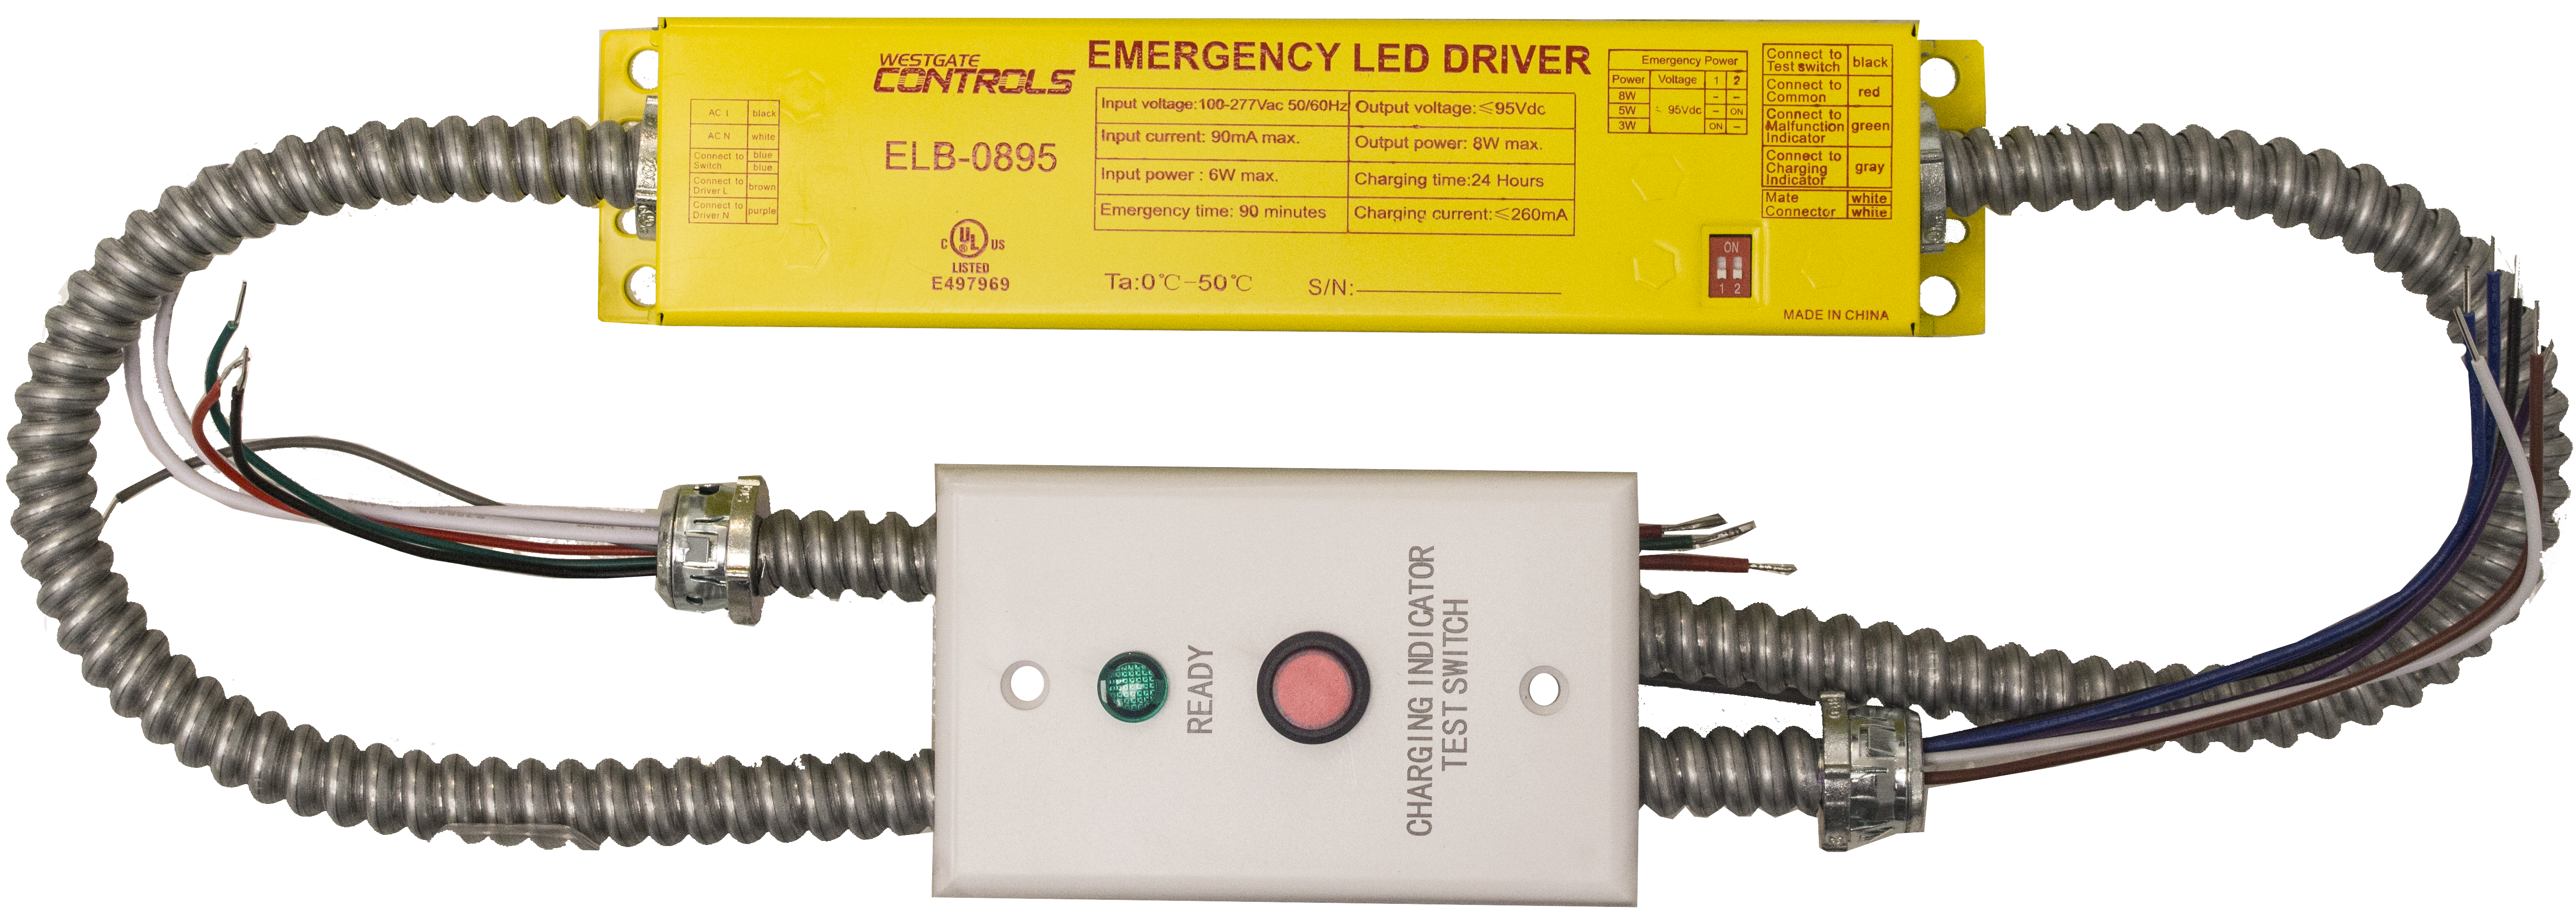 Westgate ELB-0895 Emergency Battery Backup Led Exit & Emergency Lighting